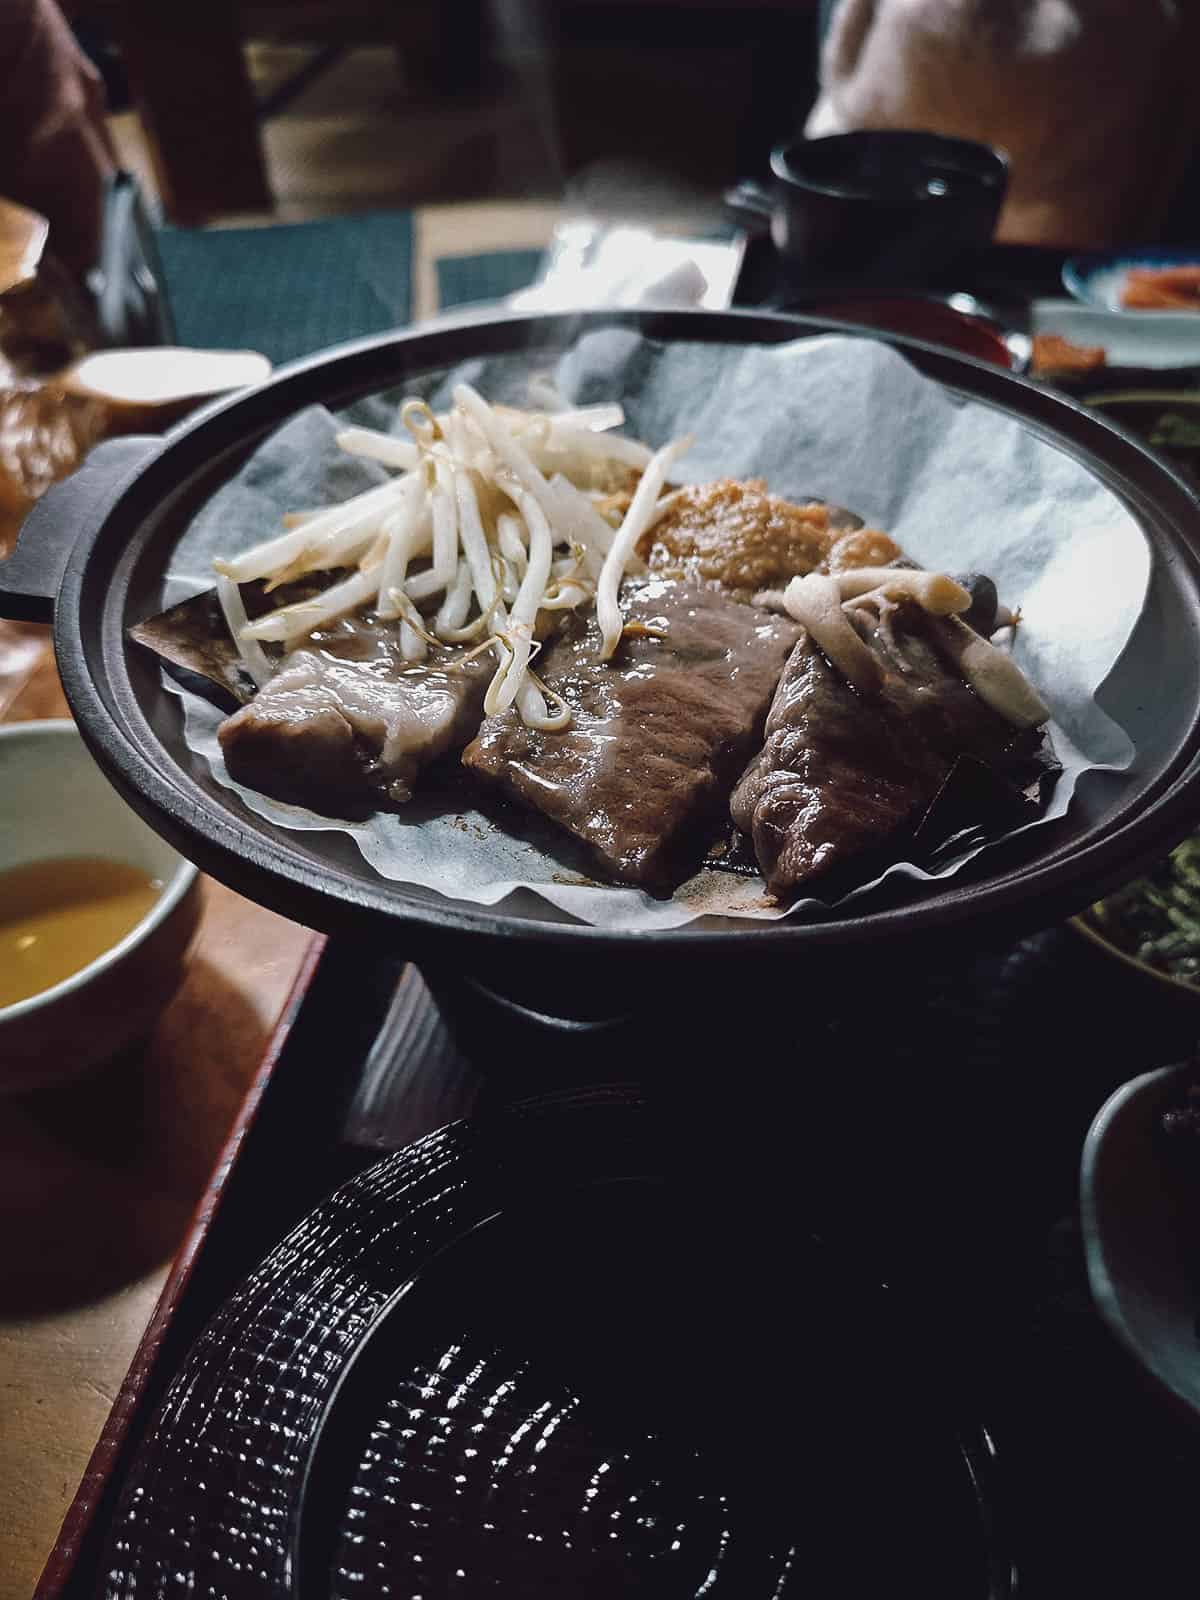 Hida beef at Irori restaurant in Shirakawa-go